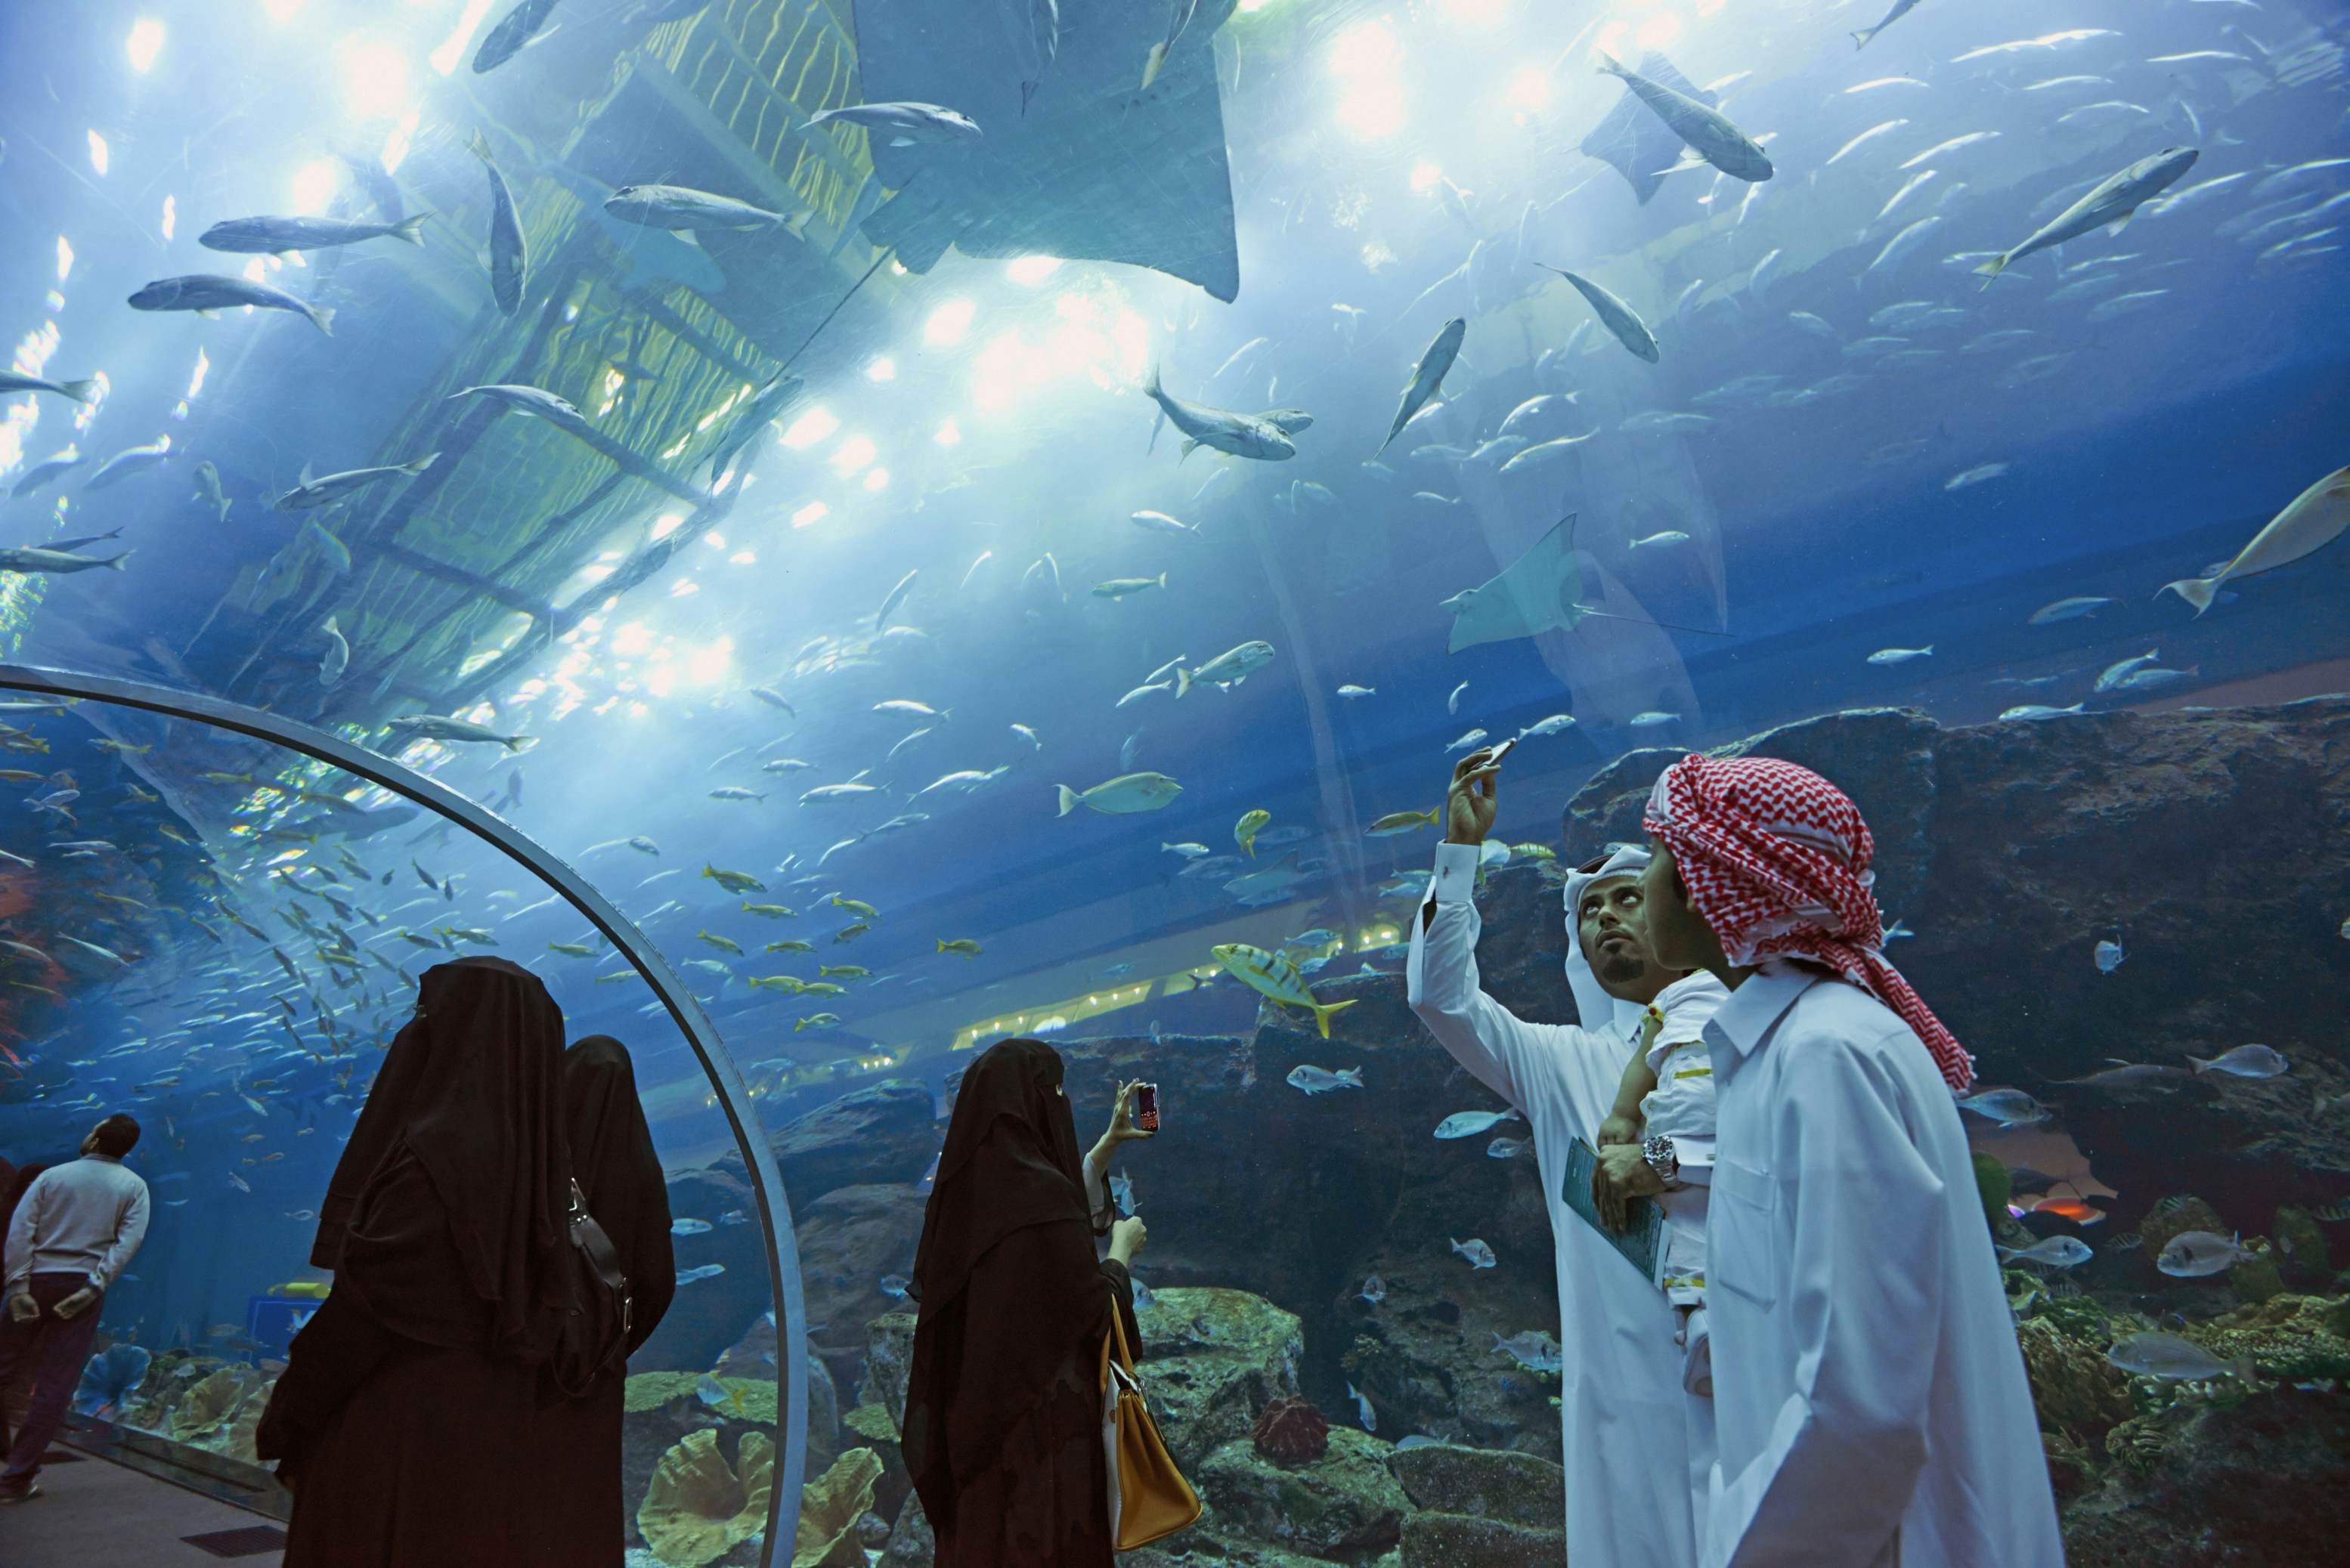 Dubai Aquarium & Underwater Zoo | Dubai, United Arab Emirates Attractions - Lonely Planet